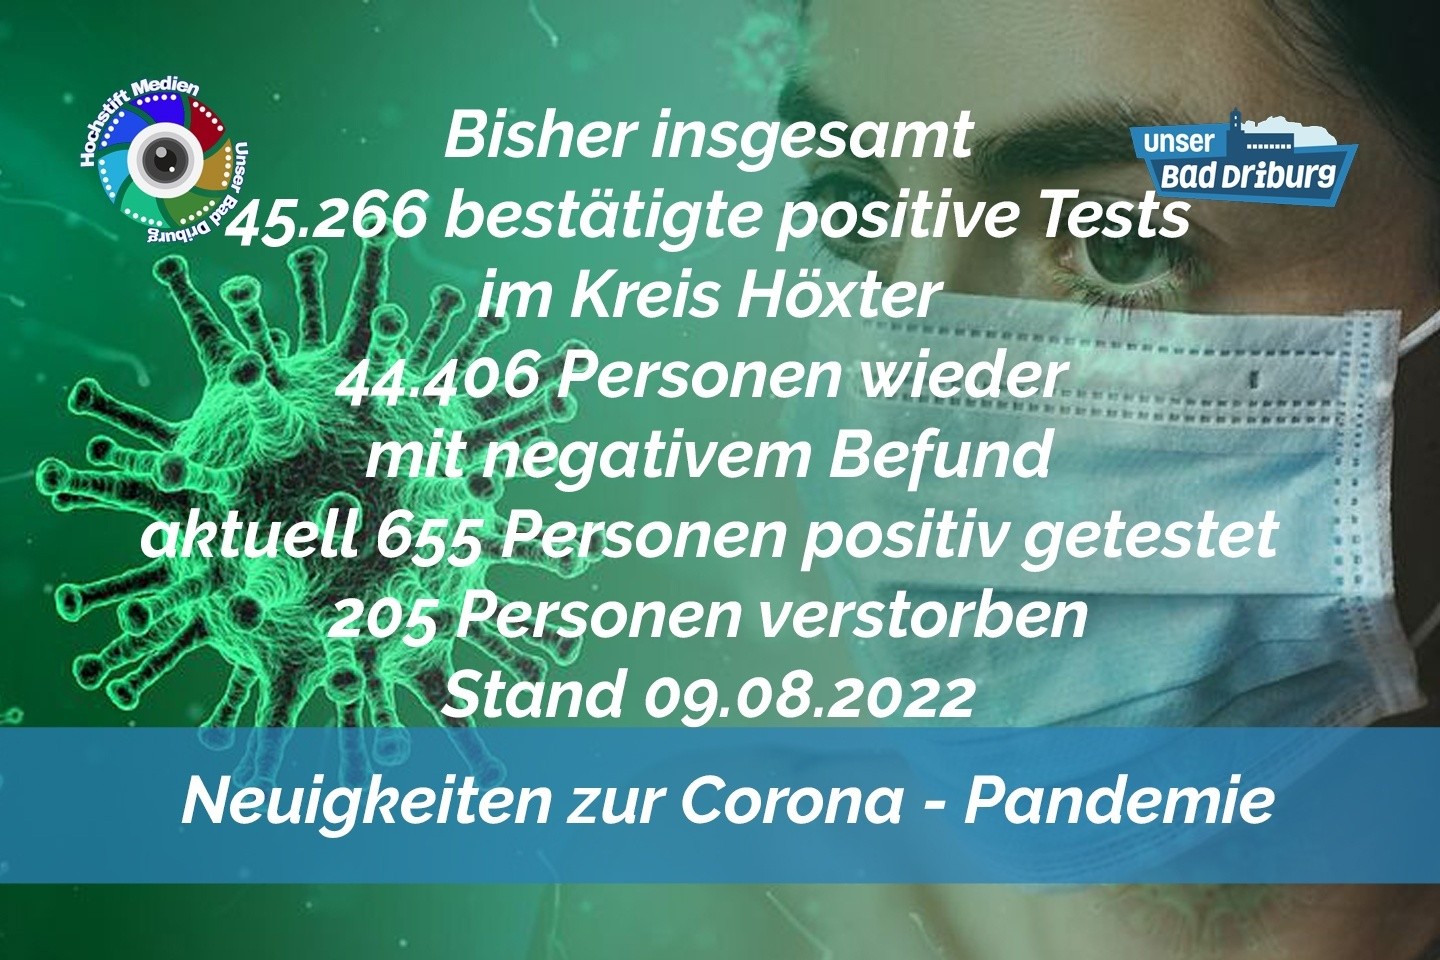 Update 09. August 2022: 142 weitere amtlich positive Tests im Kreis Höxter